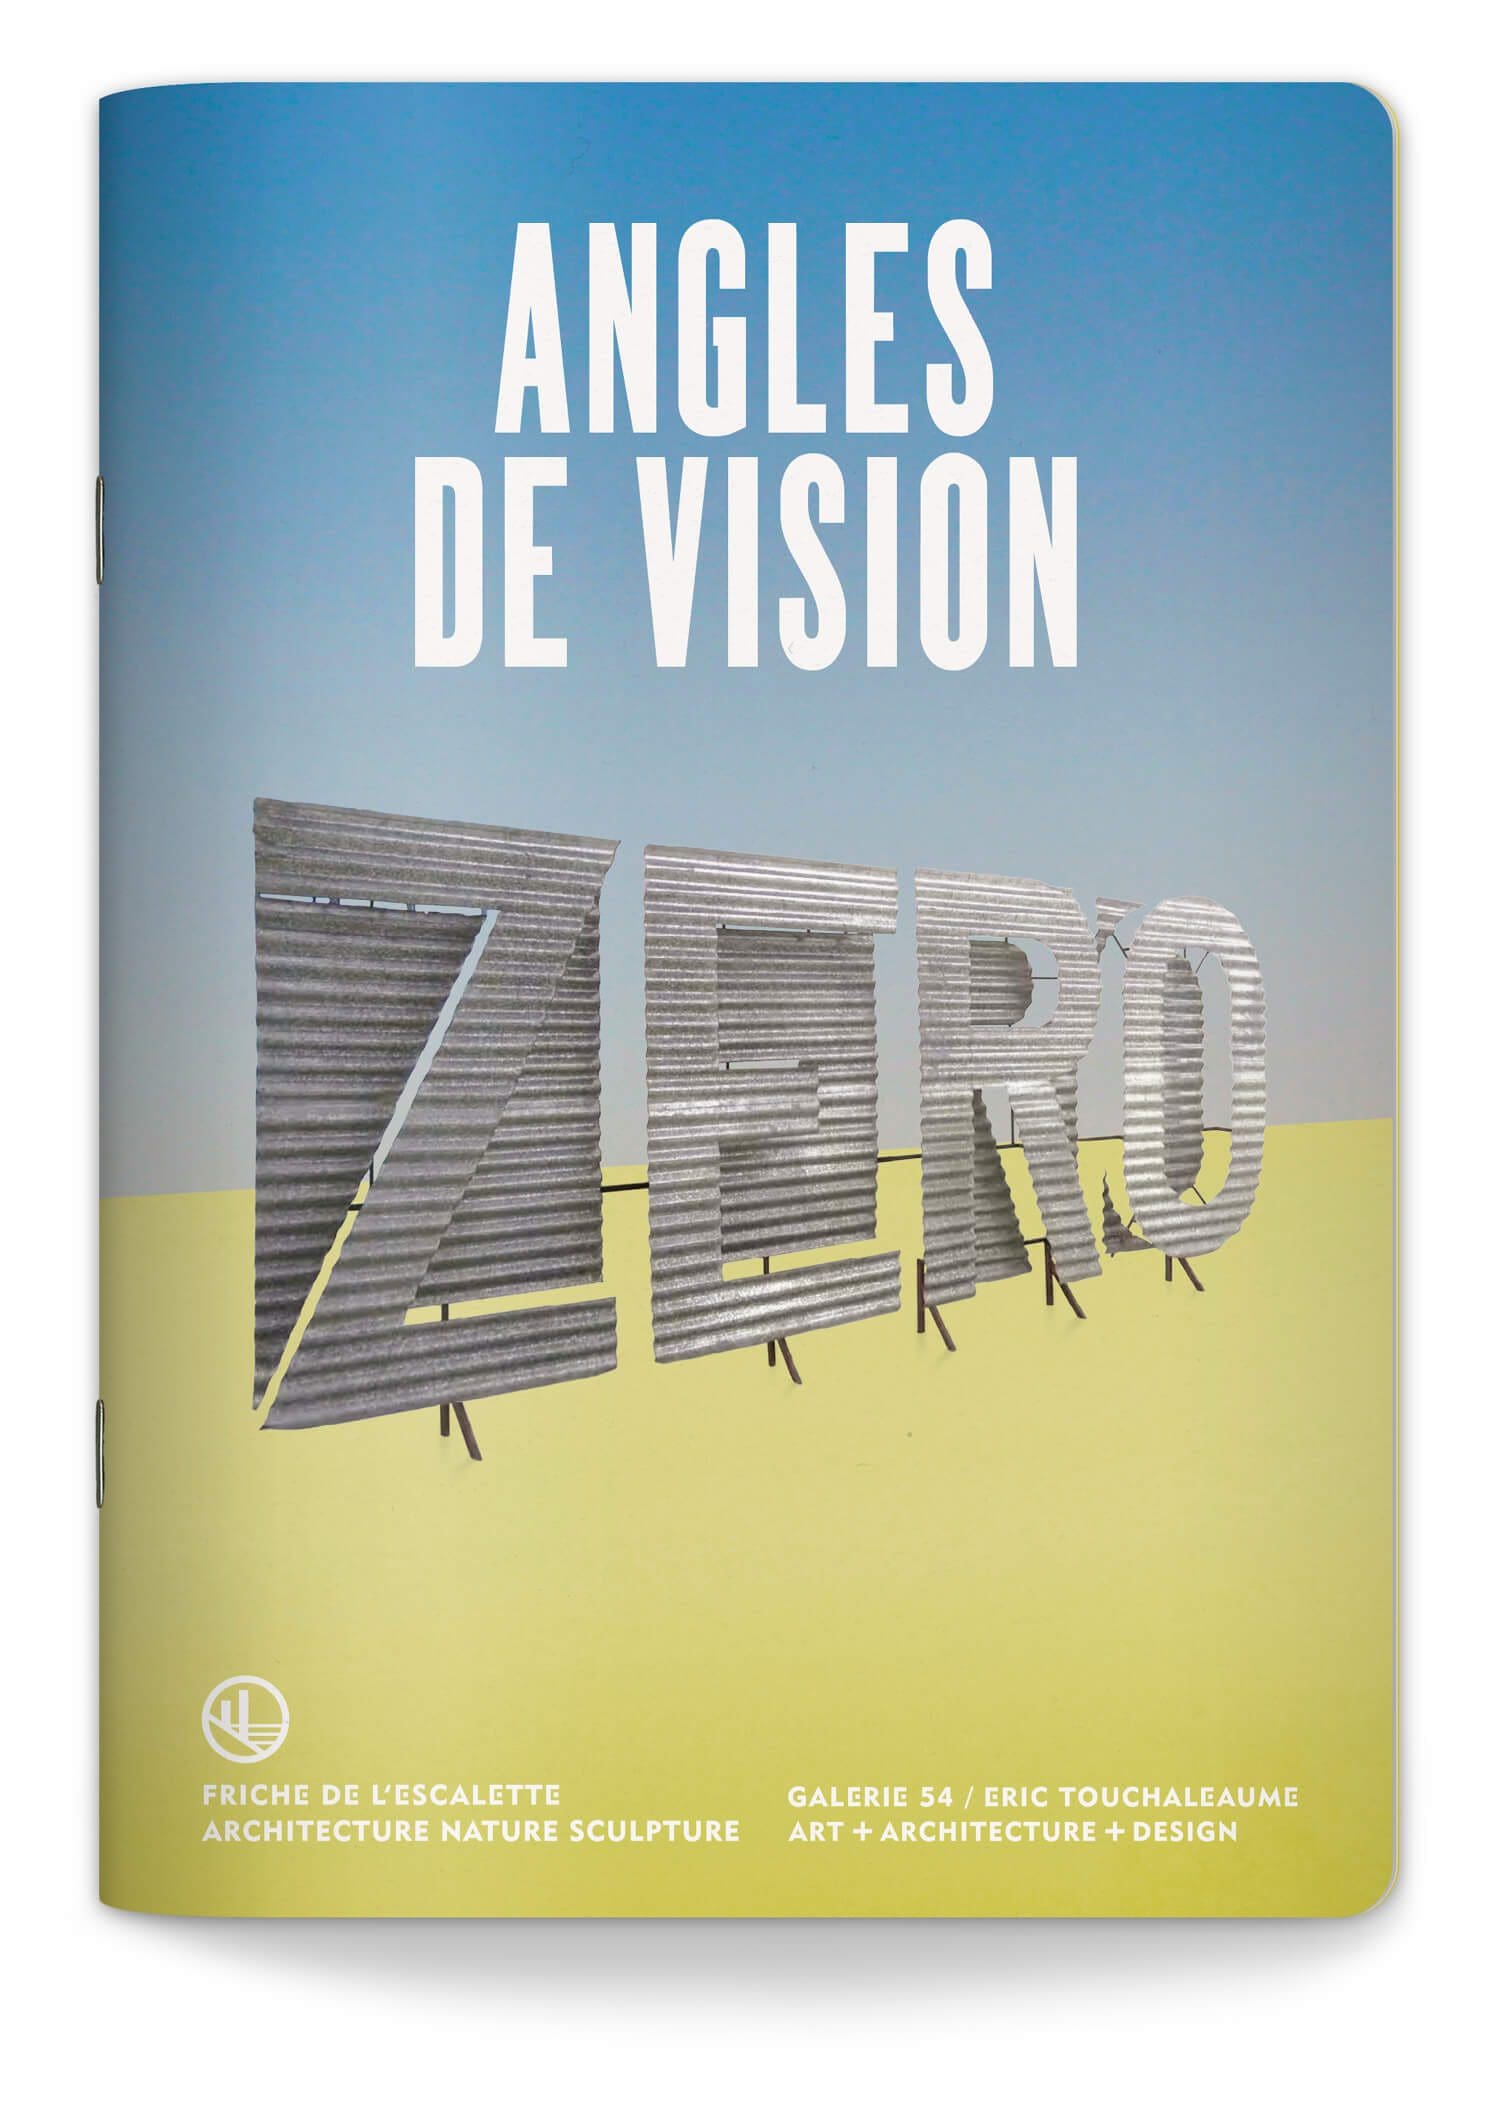 Couverture du livret de la saison 2023 de l'exposition Angles de vision à la Friche de l'escalette à Marseille, design IchetKar